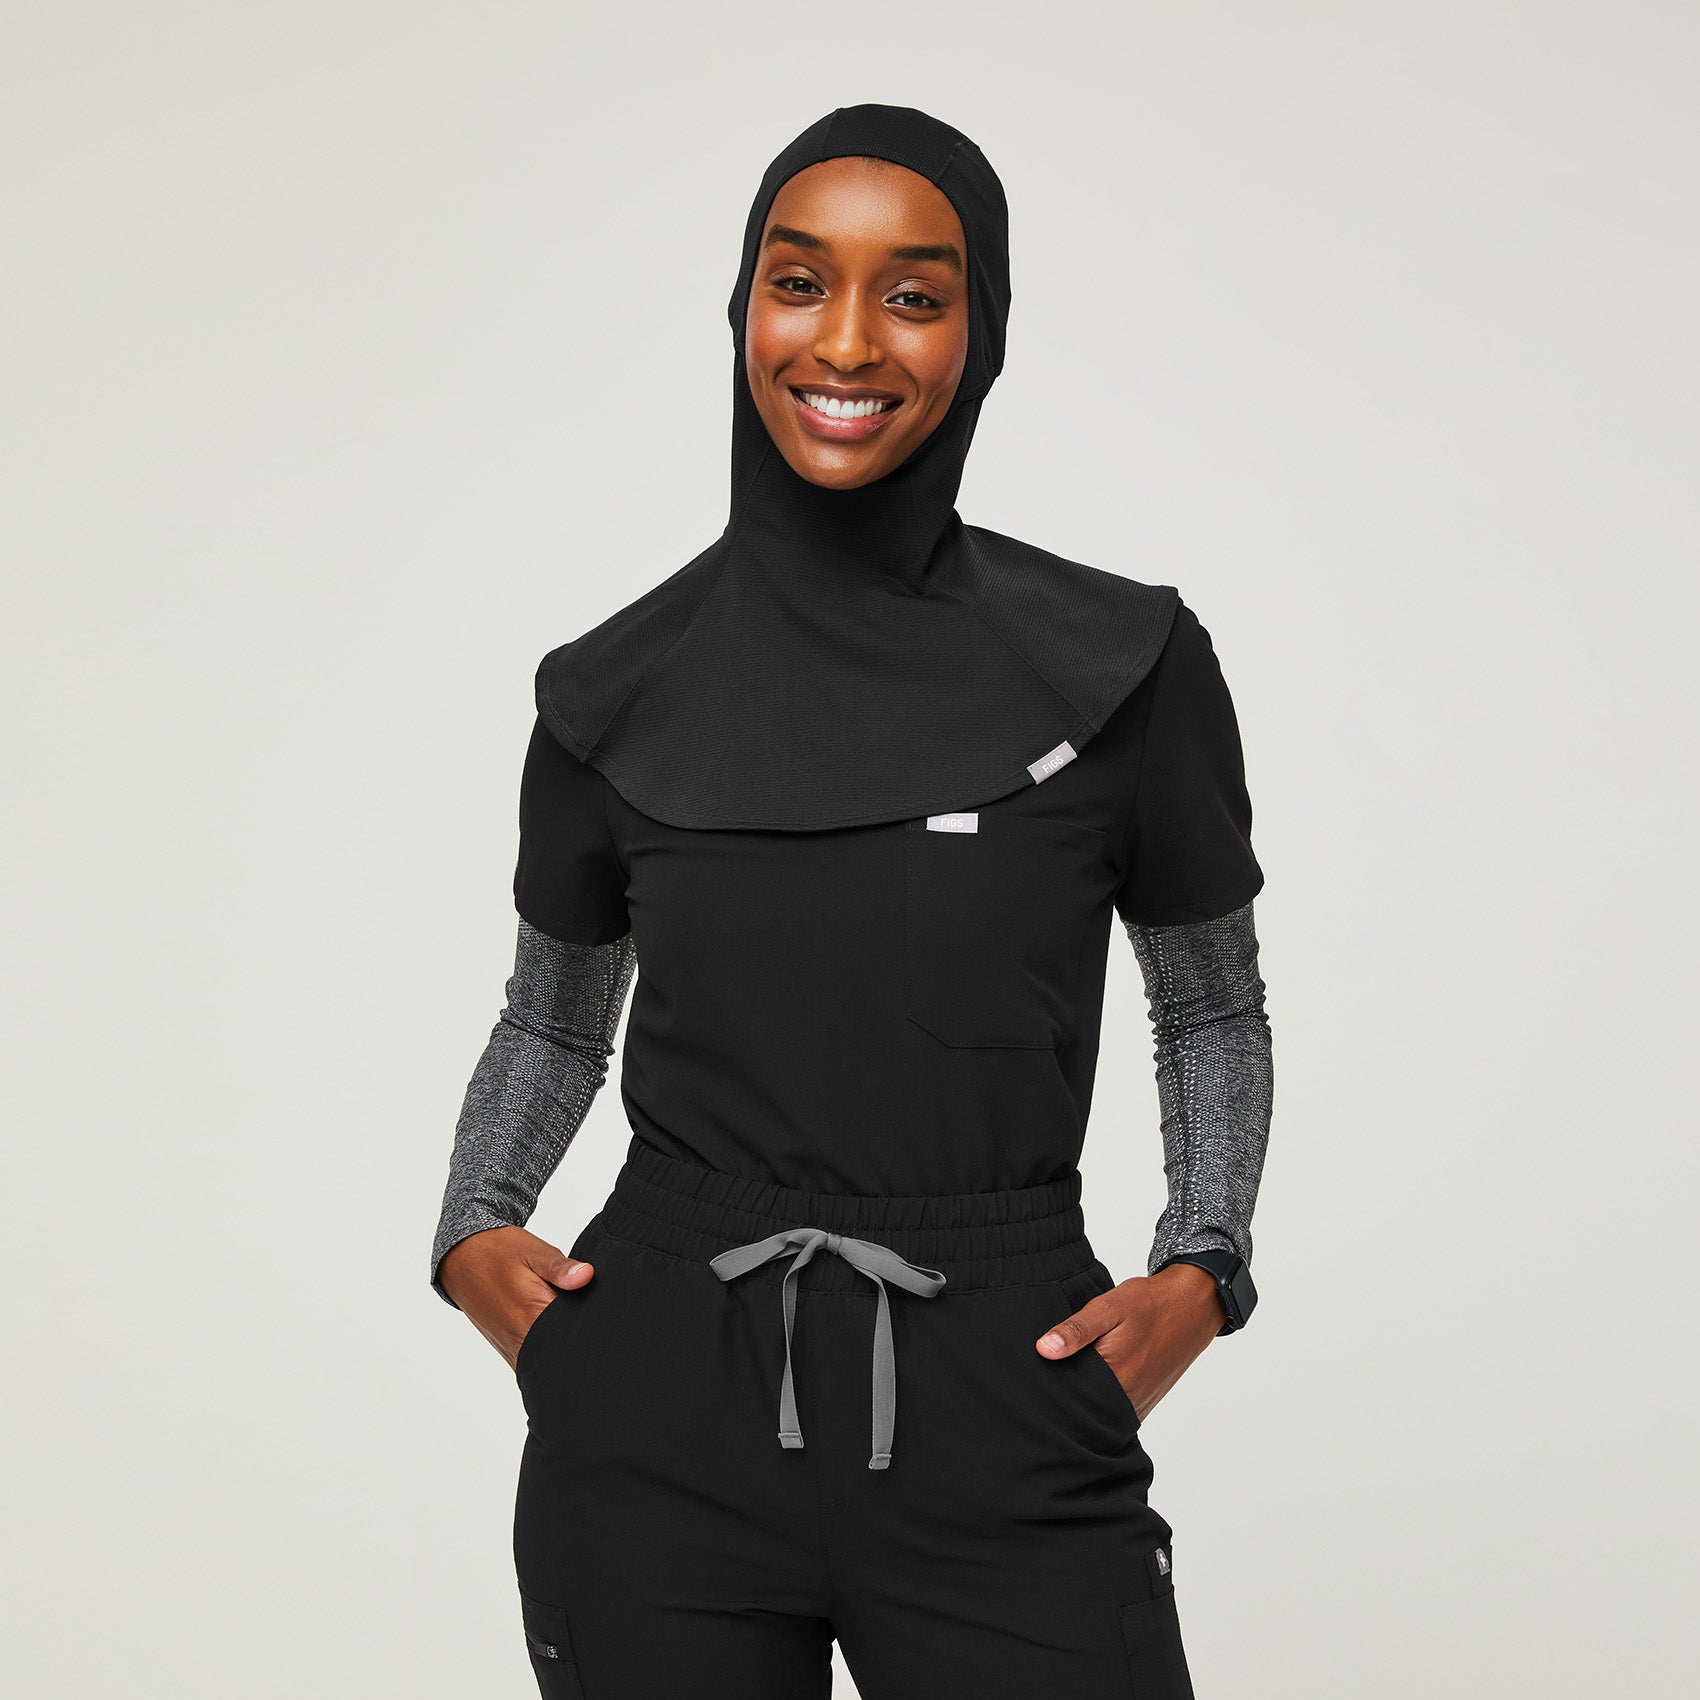 https://cdn.shopify.com/s/files/1/0139/8942/products/Womens-Hijab-black-1.jpg?v=1635382986